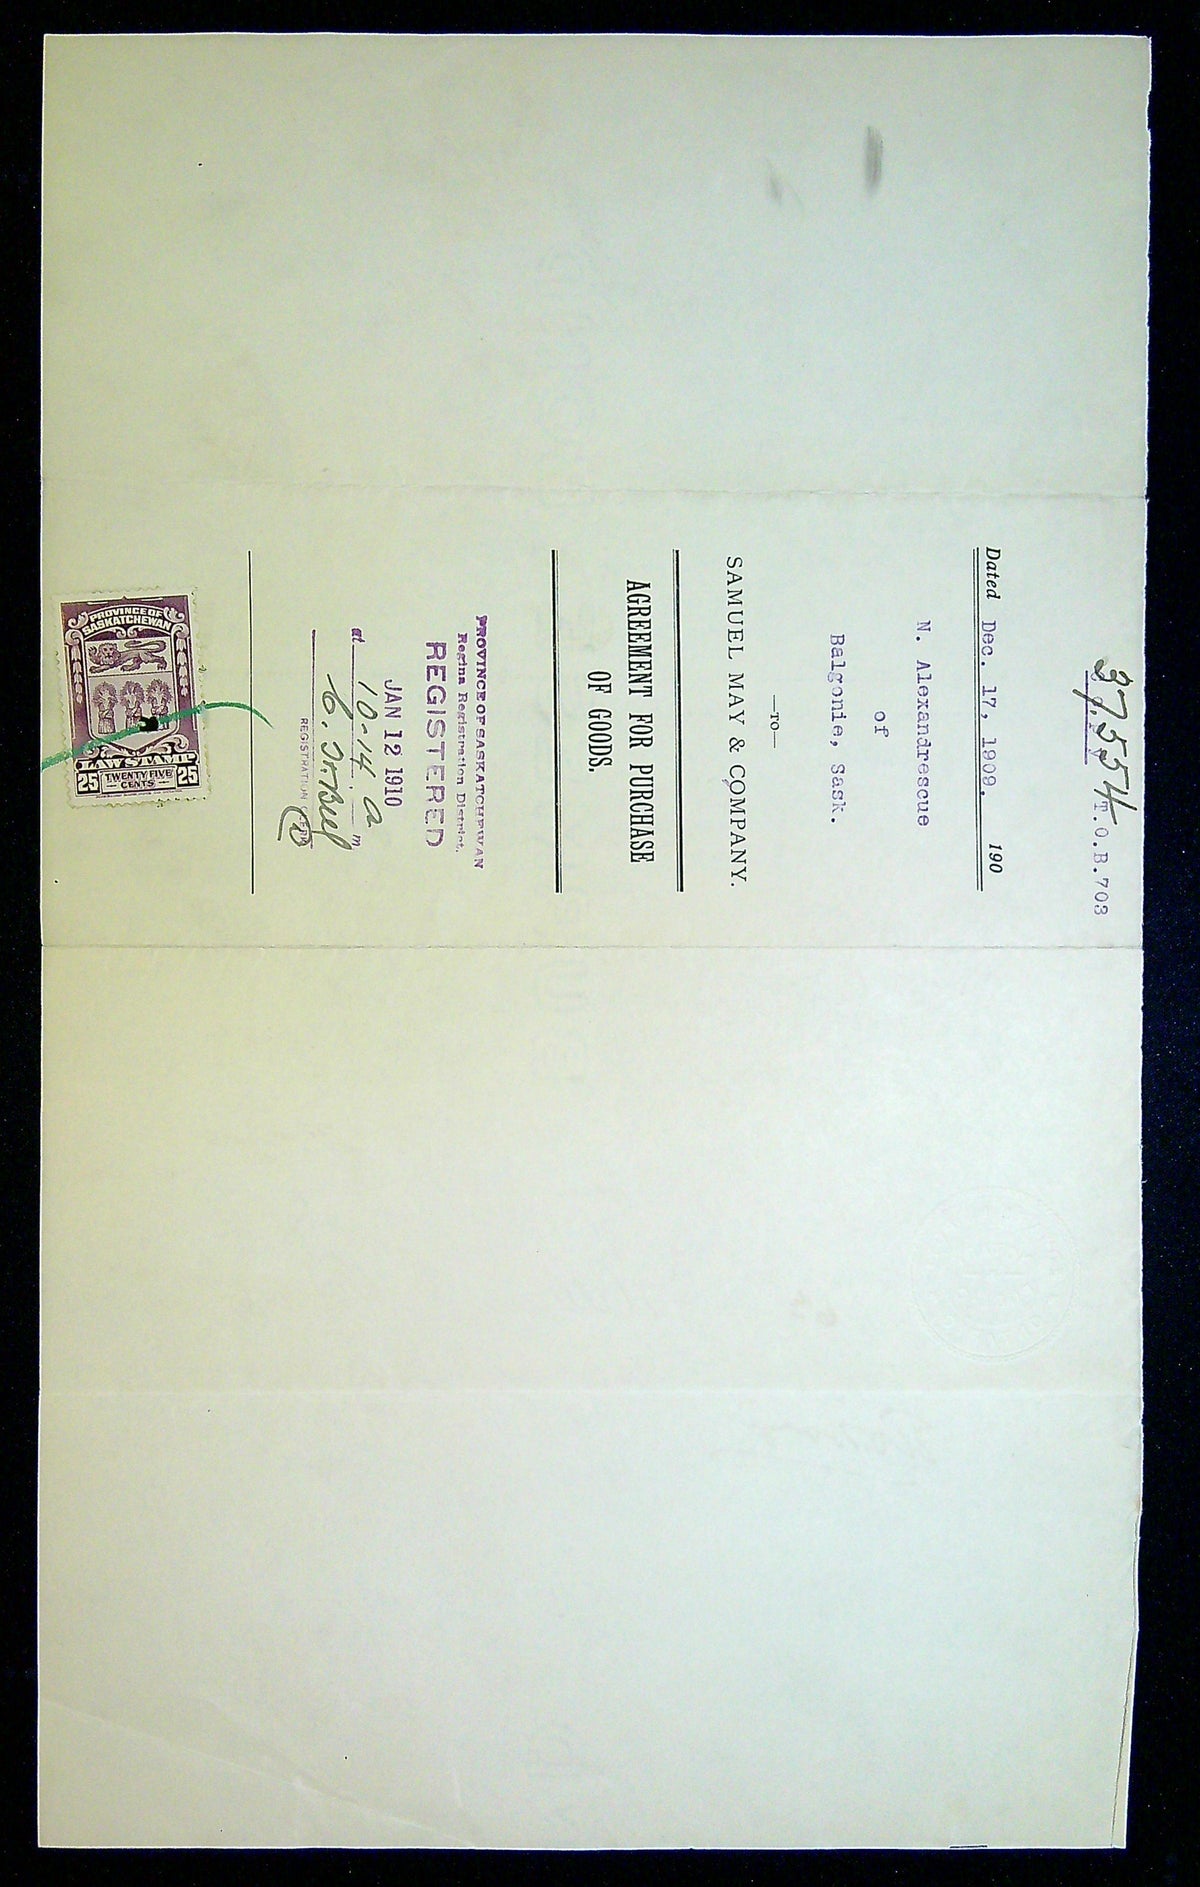 00036SL2202 - SL36 - Saskatchewan Document